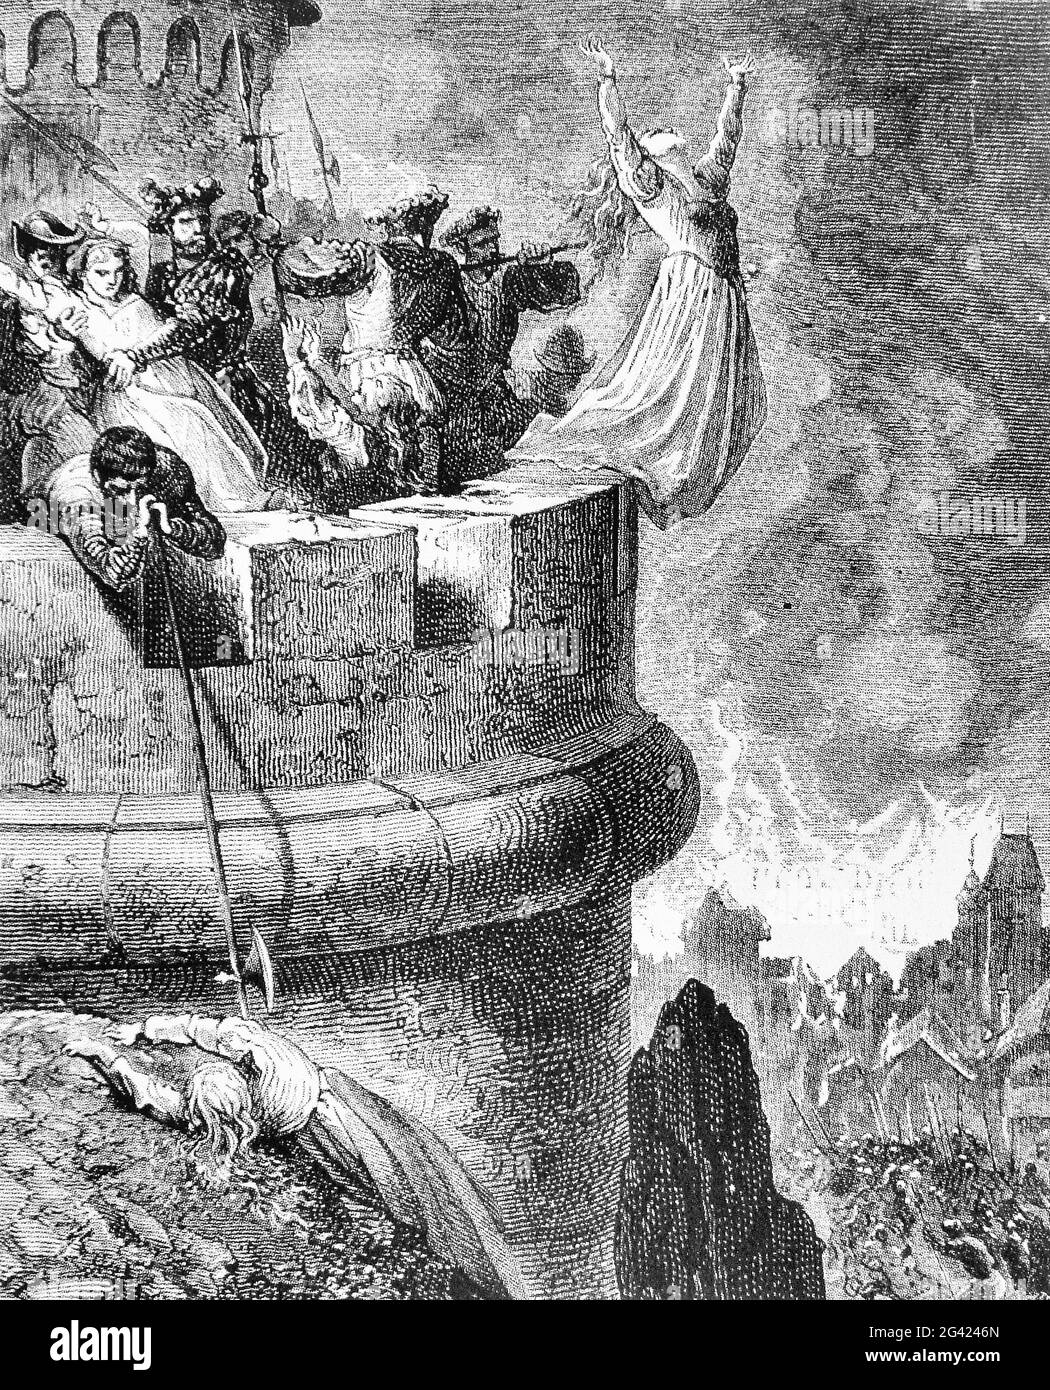 Gravur des Massakers von Mérindol von 1545, als Franz I. von Frankreich die Waldenser des Dorfes Mérindol für regimekritische religiöse Aktivitäten bestrafte. Provençal und päpstliche Soldaten töteten Hunderte oder sogar Tausende Waldenserbewohner. Dieses Bild von Gustave Dore, 1830er Jahre Stockfoto